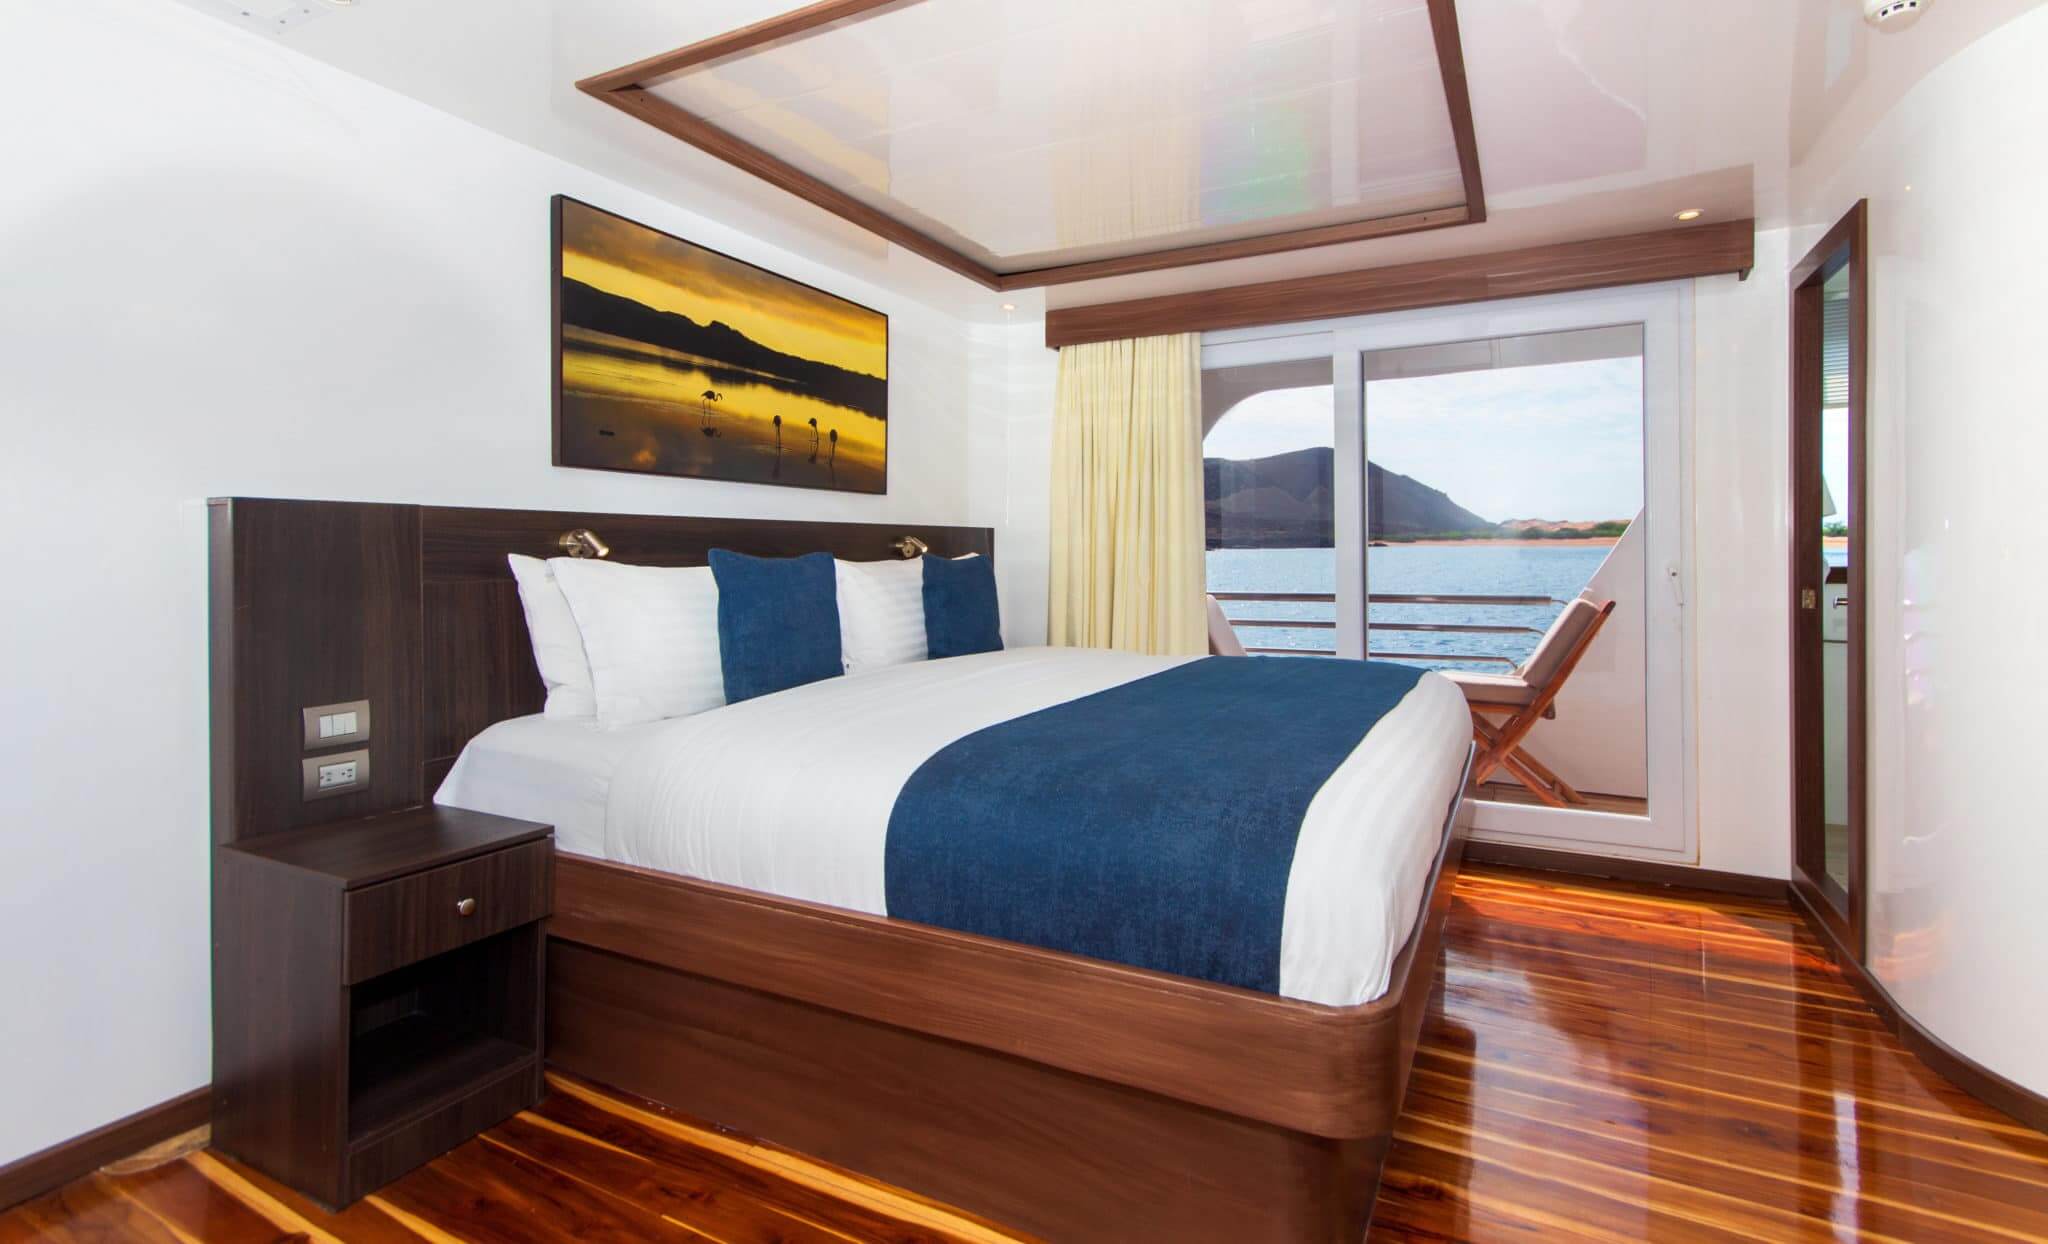 cormorant-i-luxury-galapagos-cruise